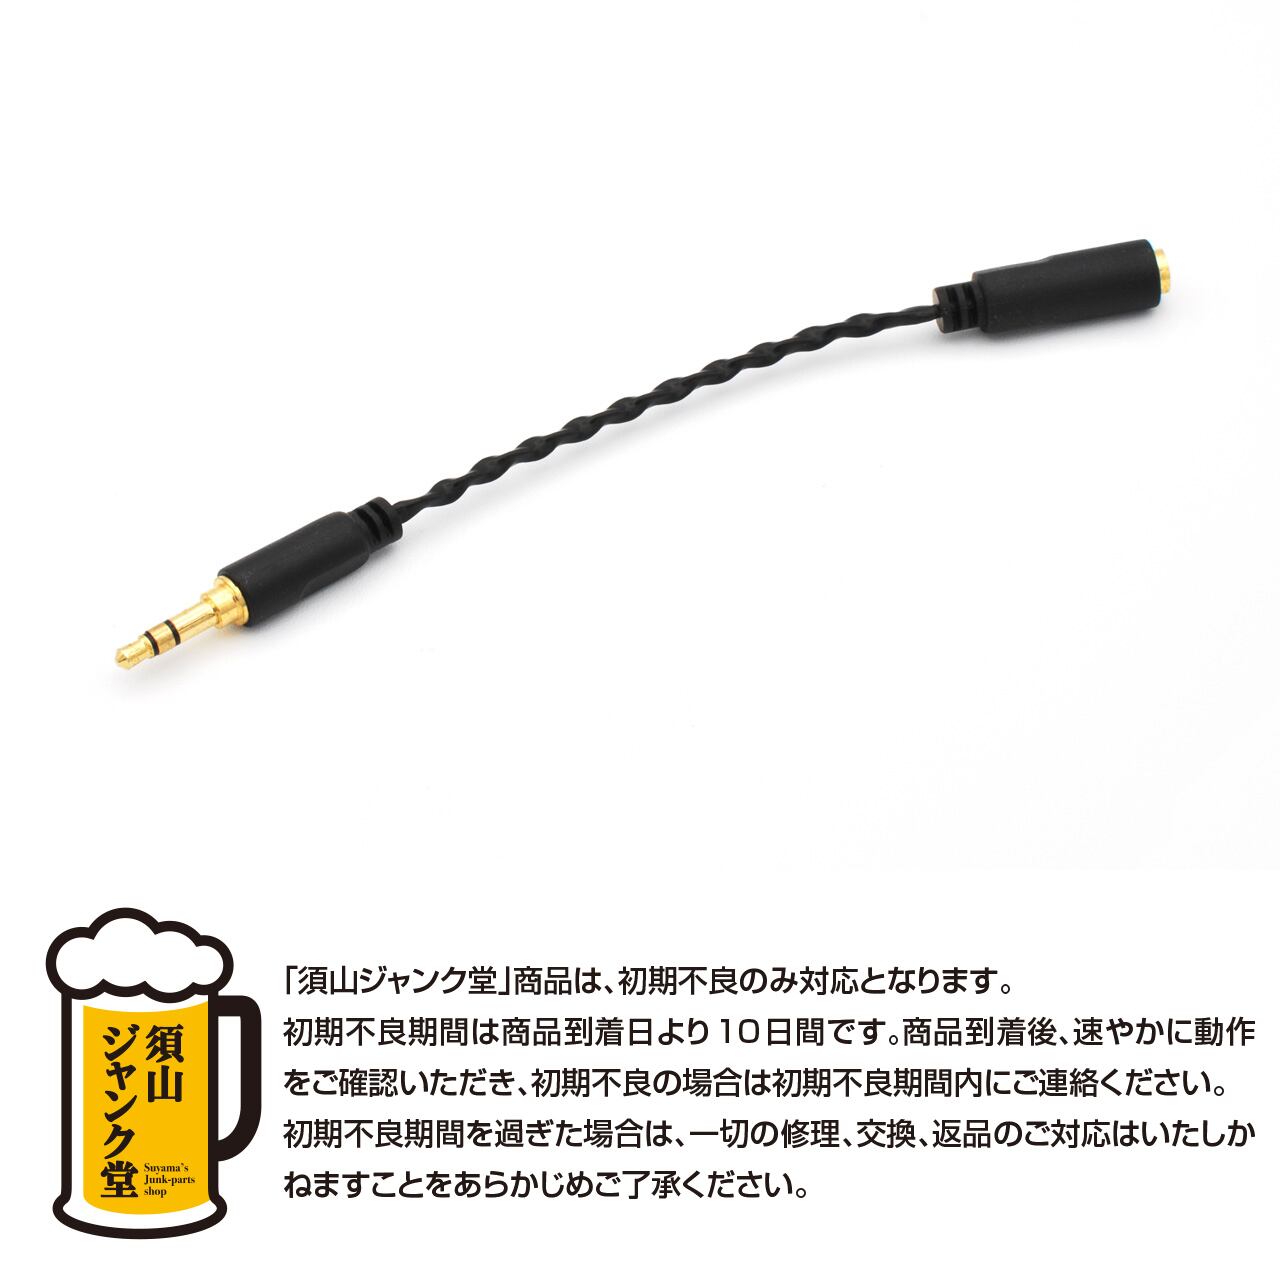 須山ジャンク堂】FitEar cable 007B25AK | FitEar Laboratory